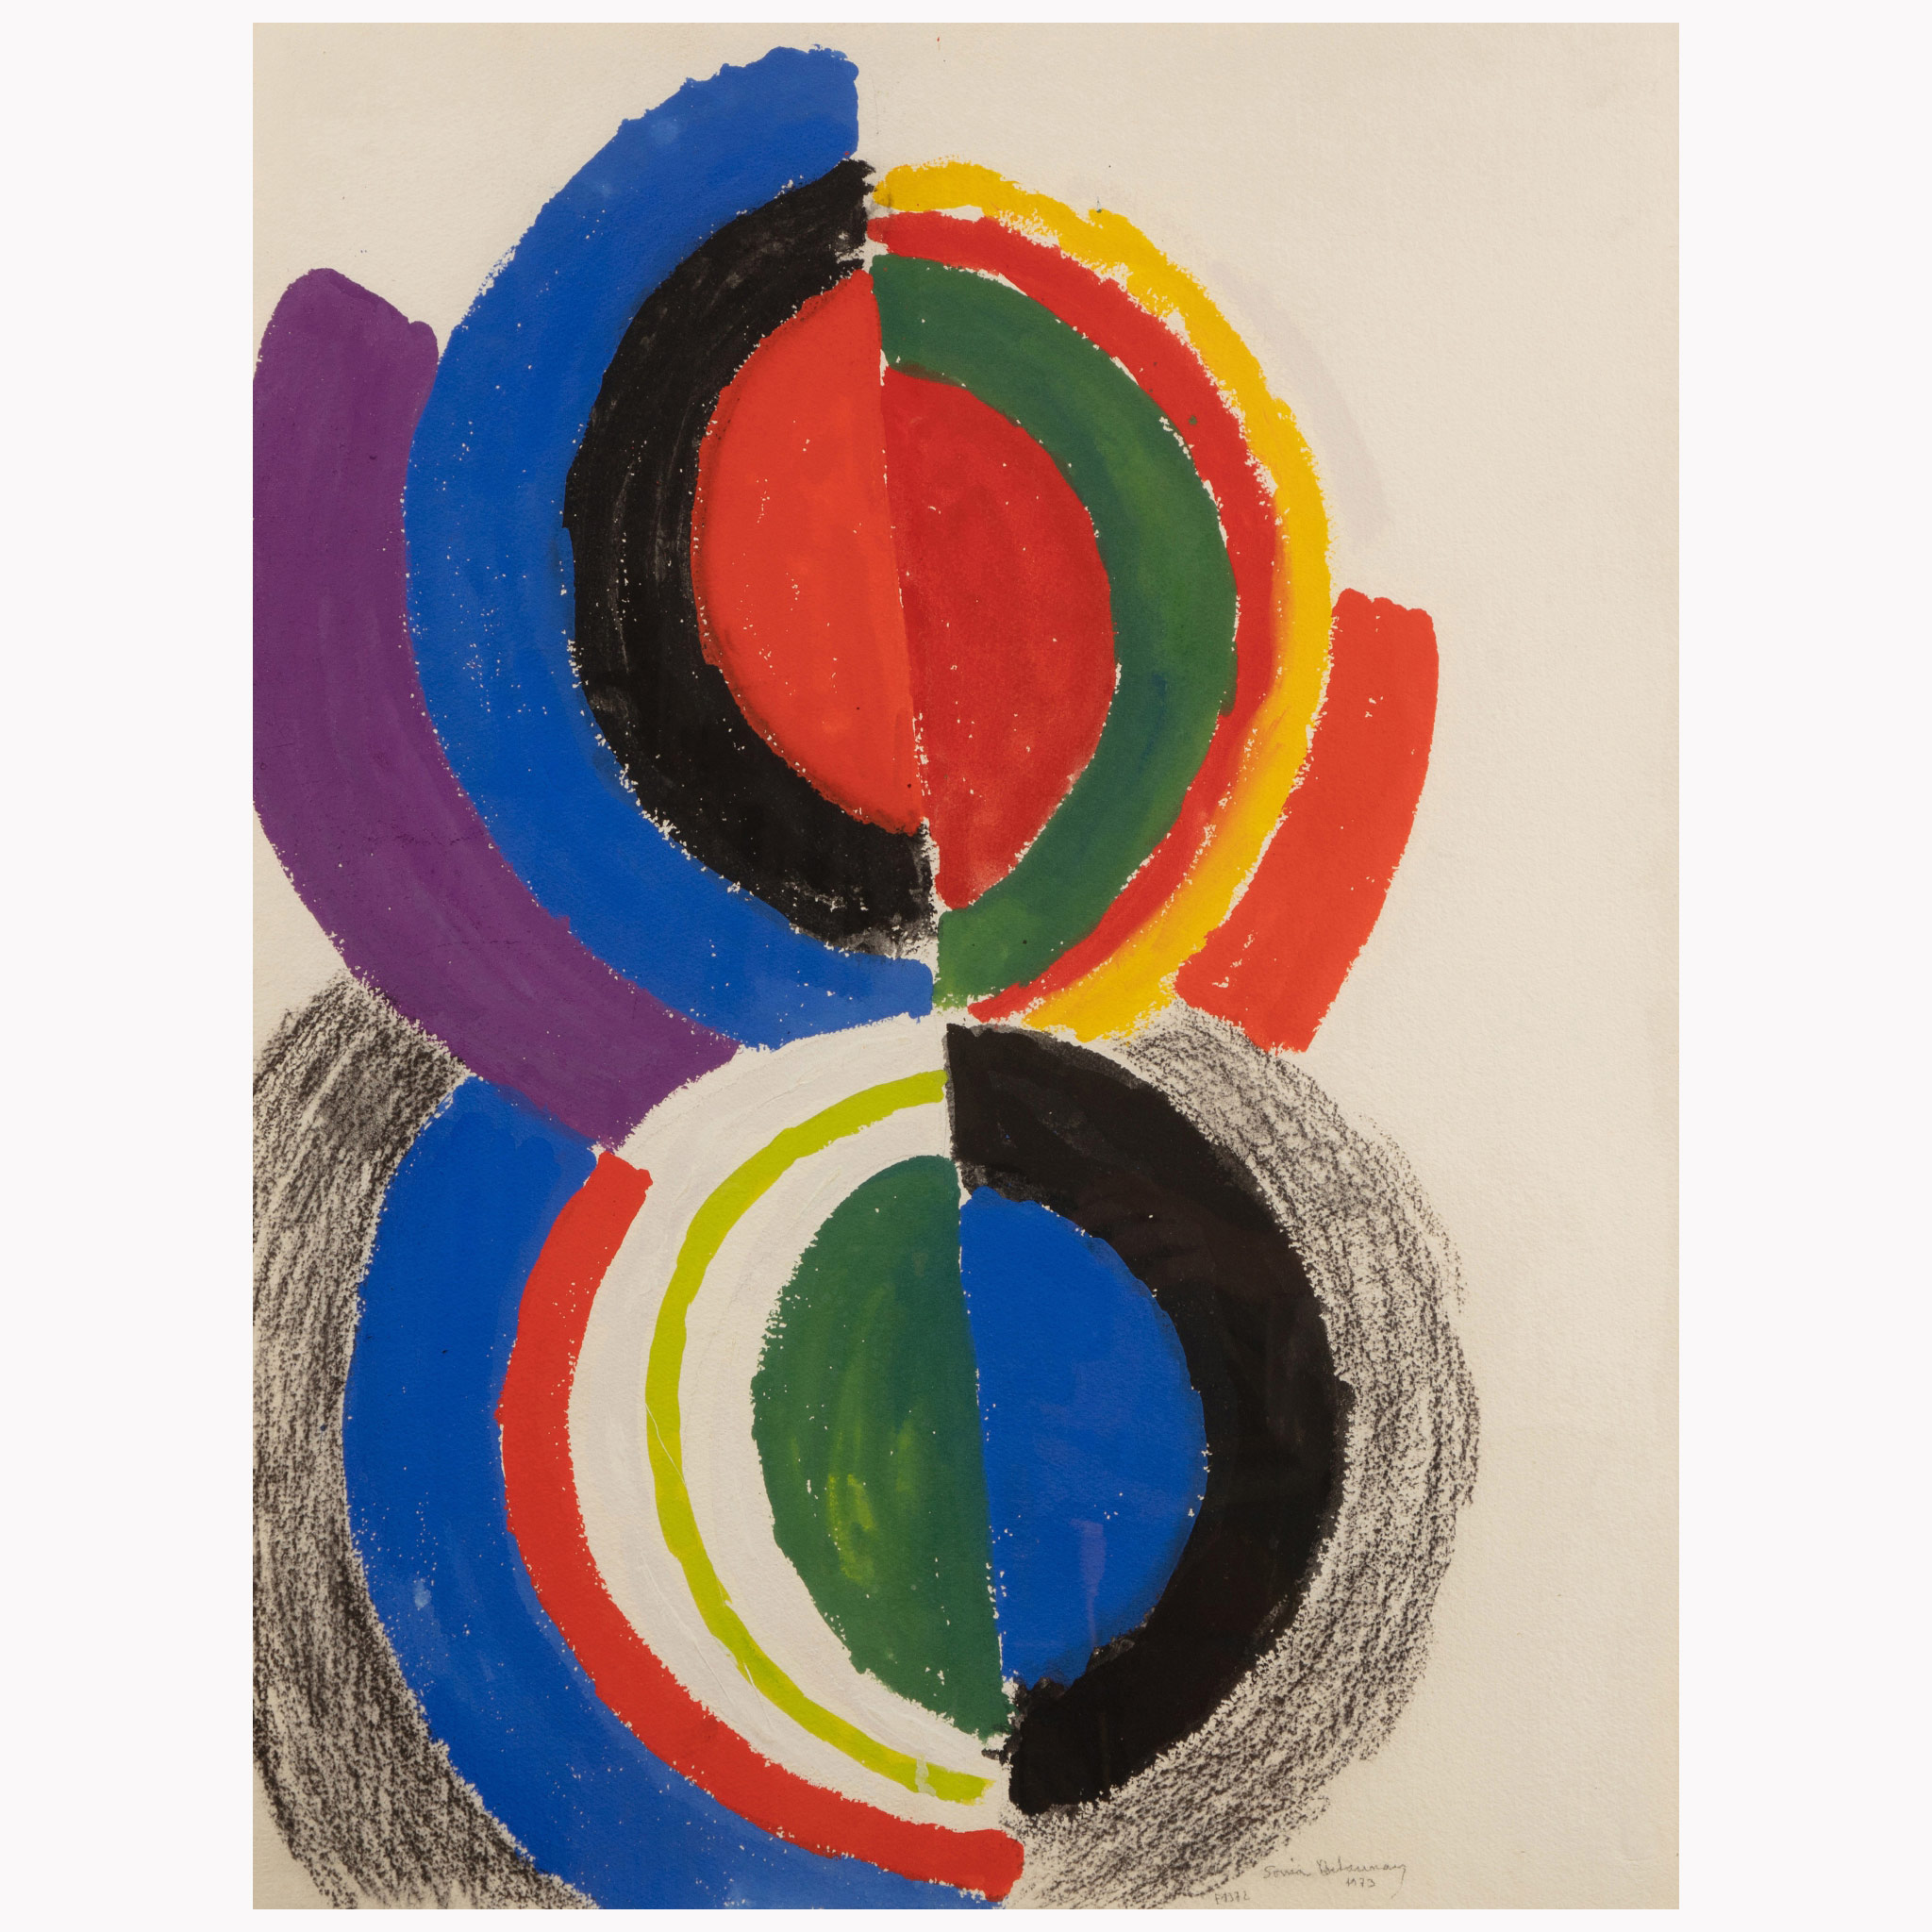 Sonia Delaunay (1885 – 1979), Rythme couleur, 1973, gouache sur papier. D : 76 x 58 cm. Coll Privée.